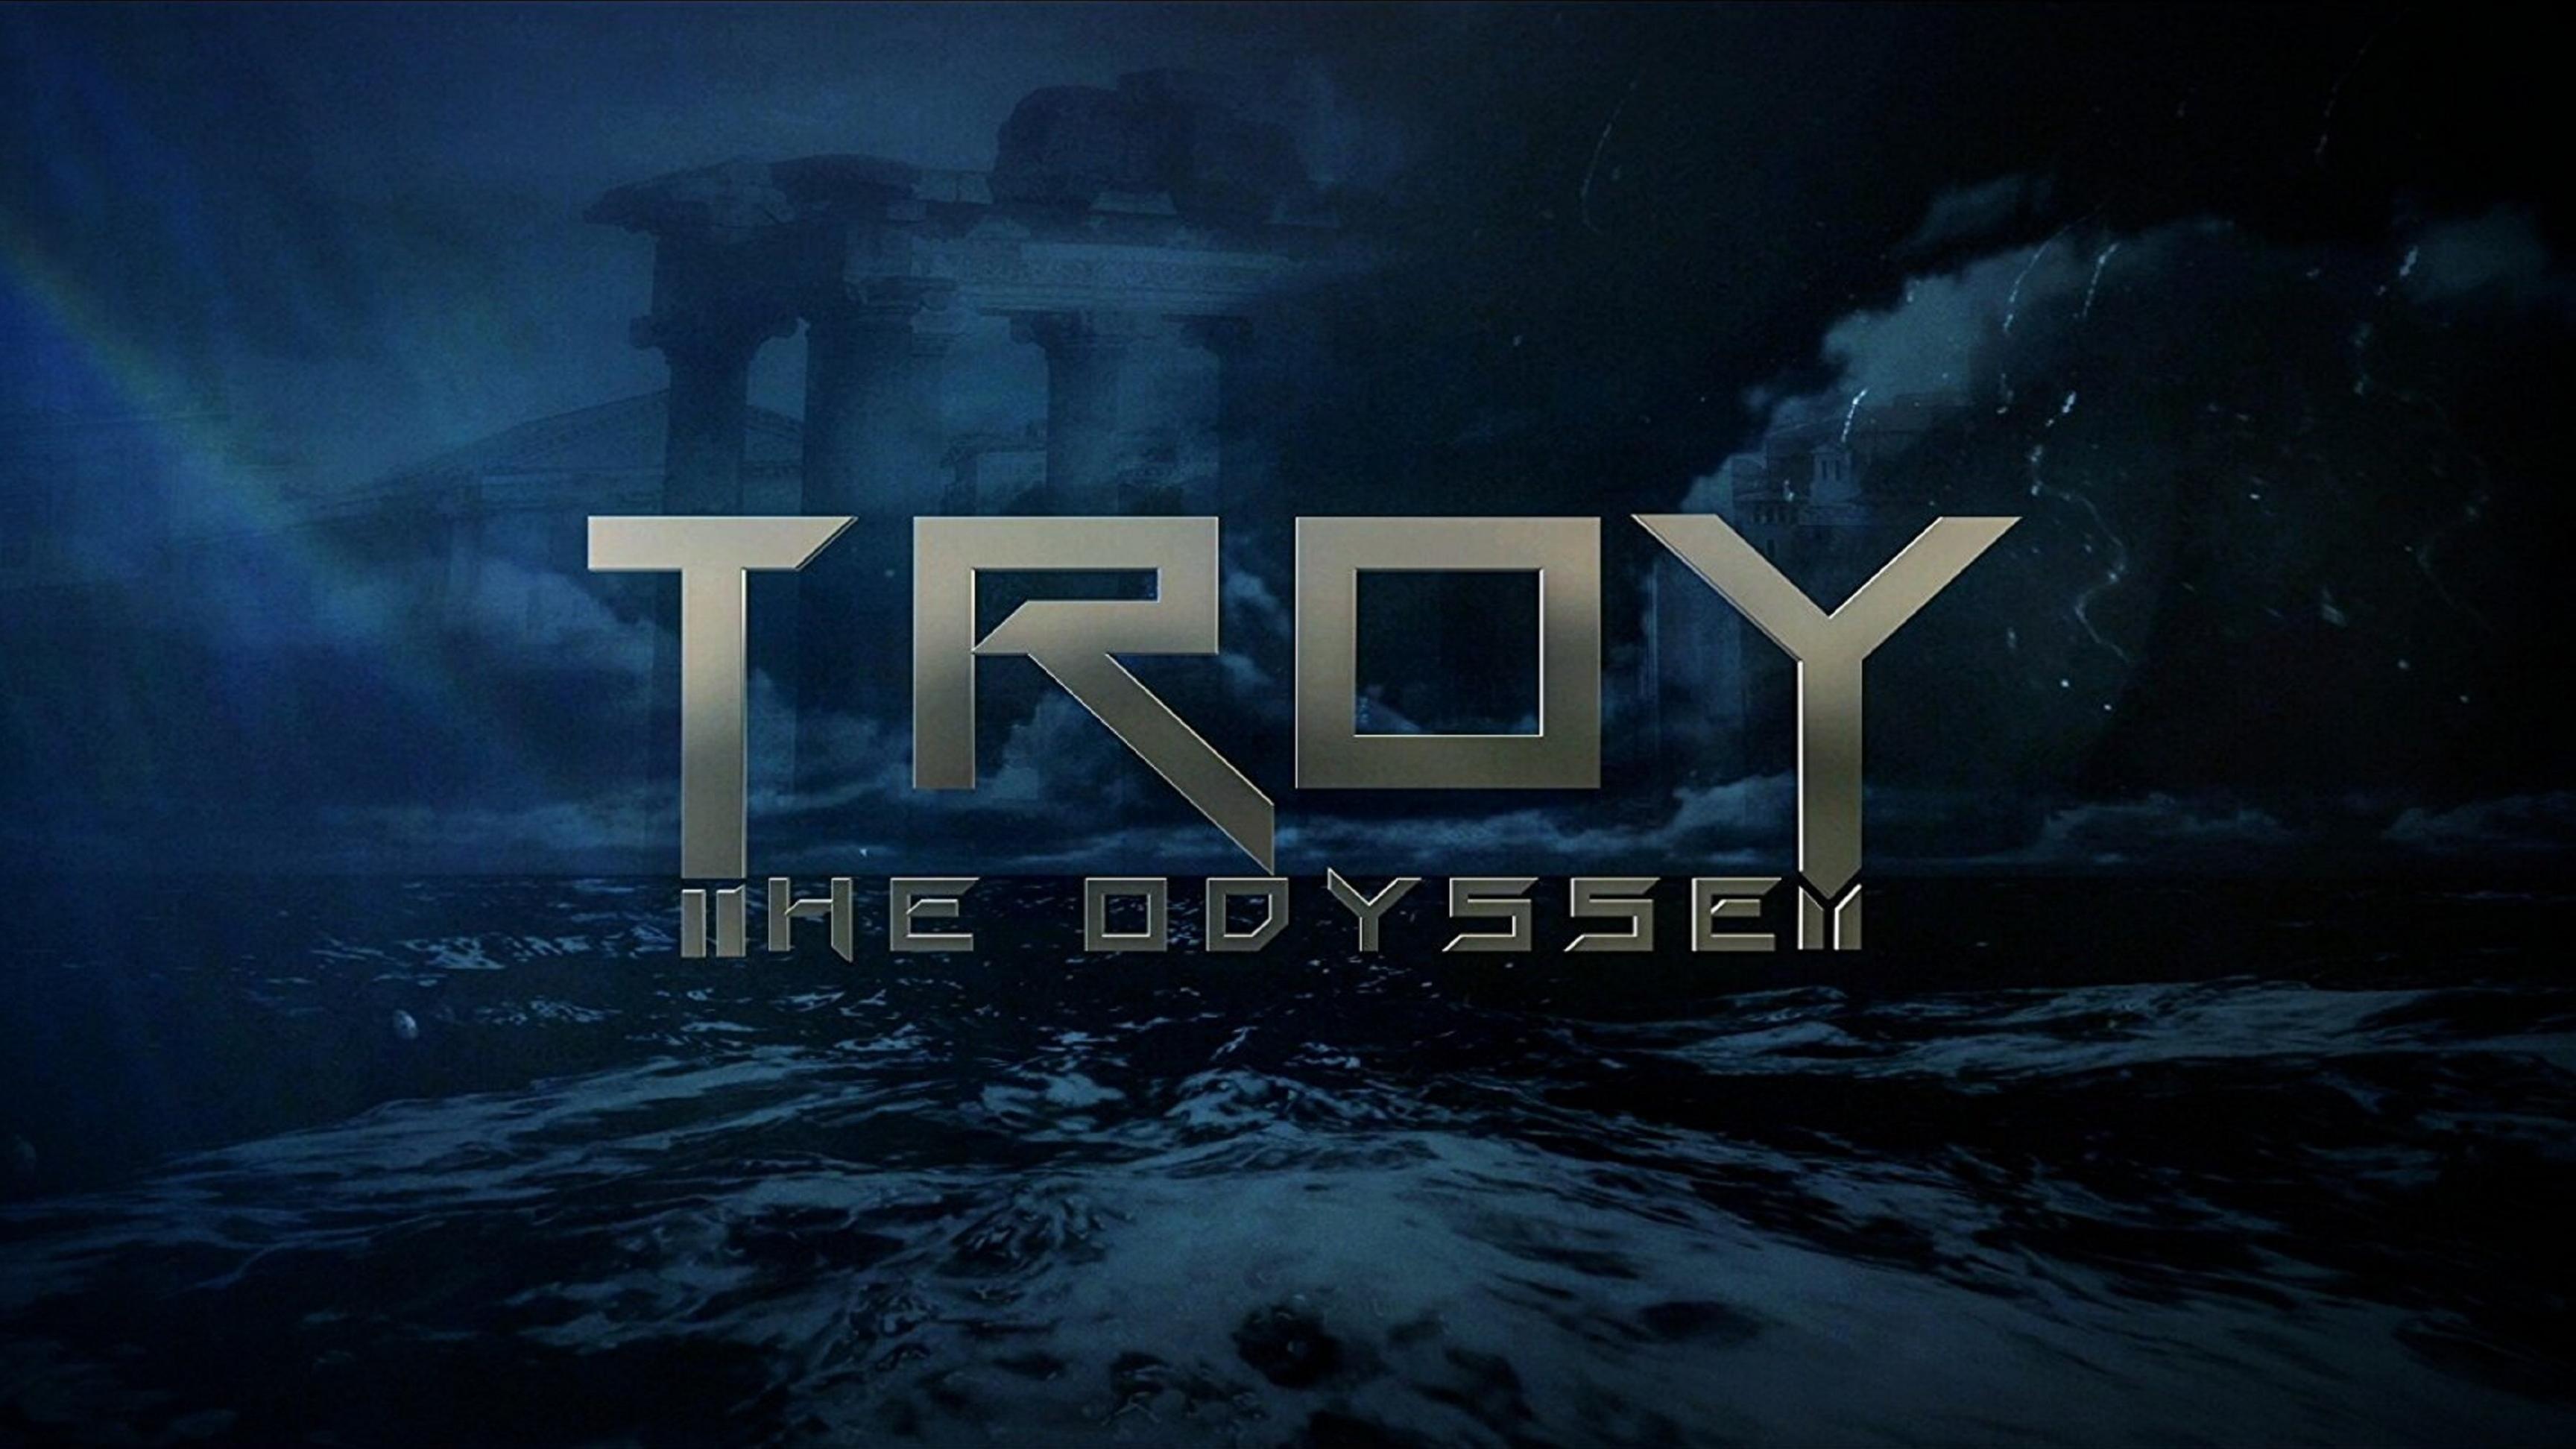 Troy the Odyssey backdrop